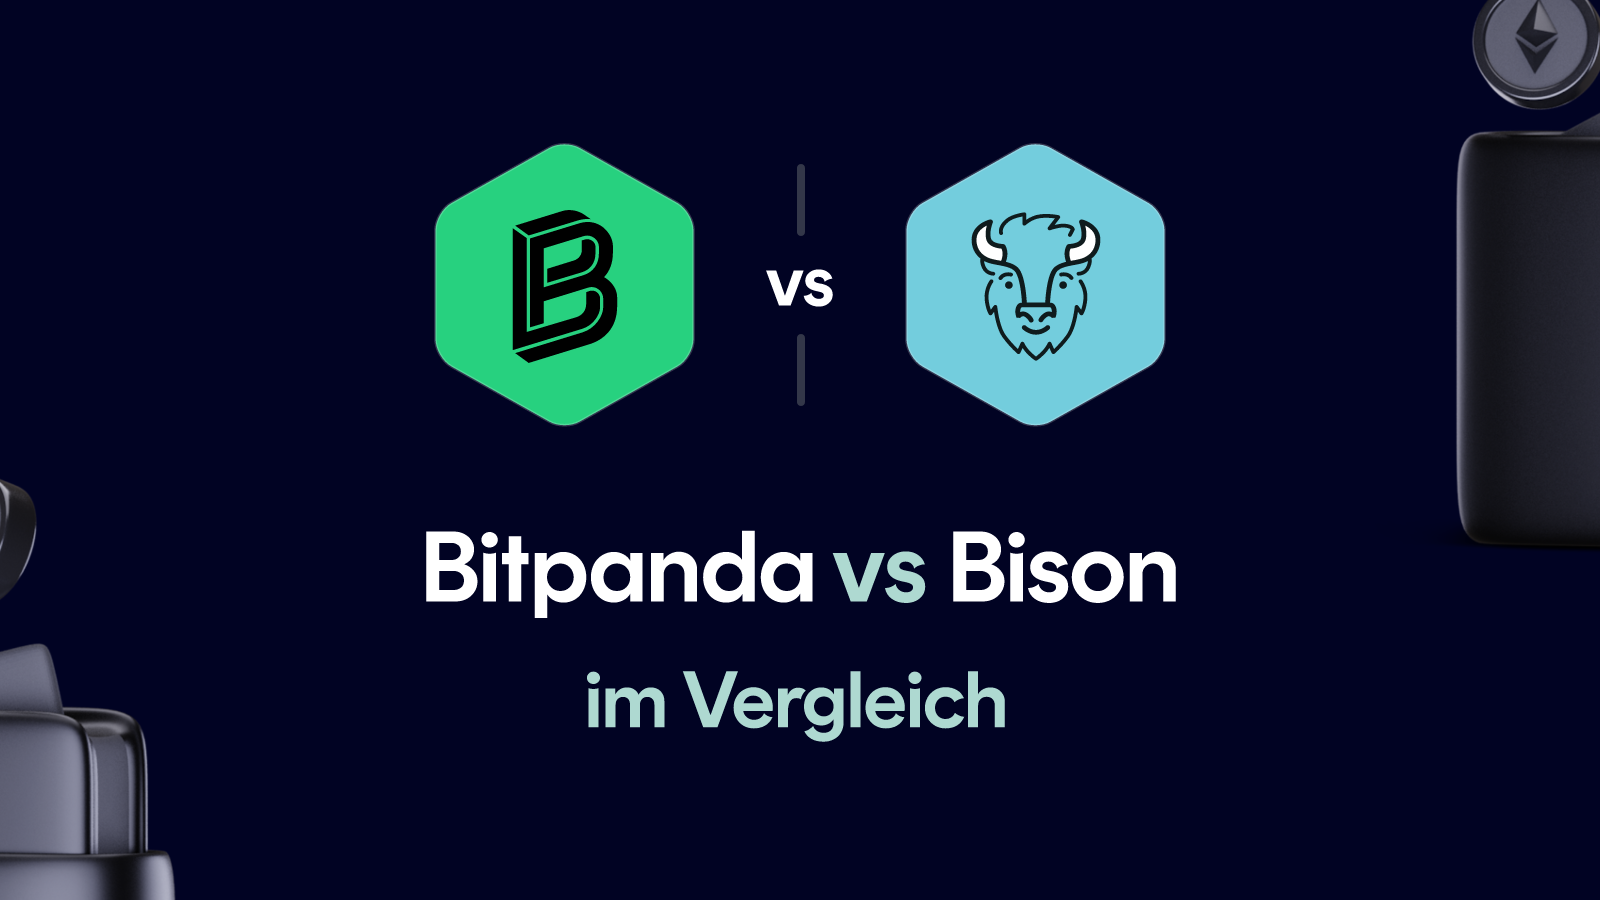 Bitpanda vs Bison